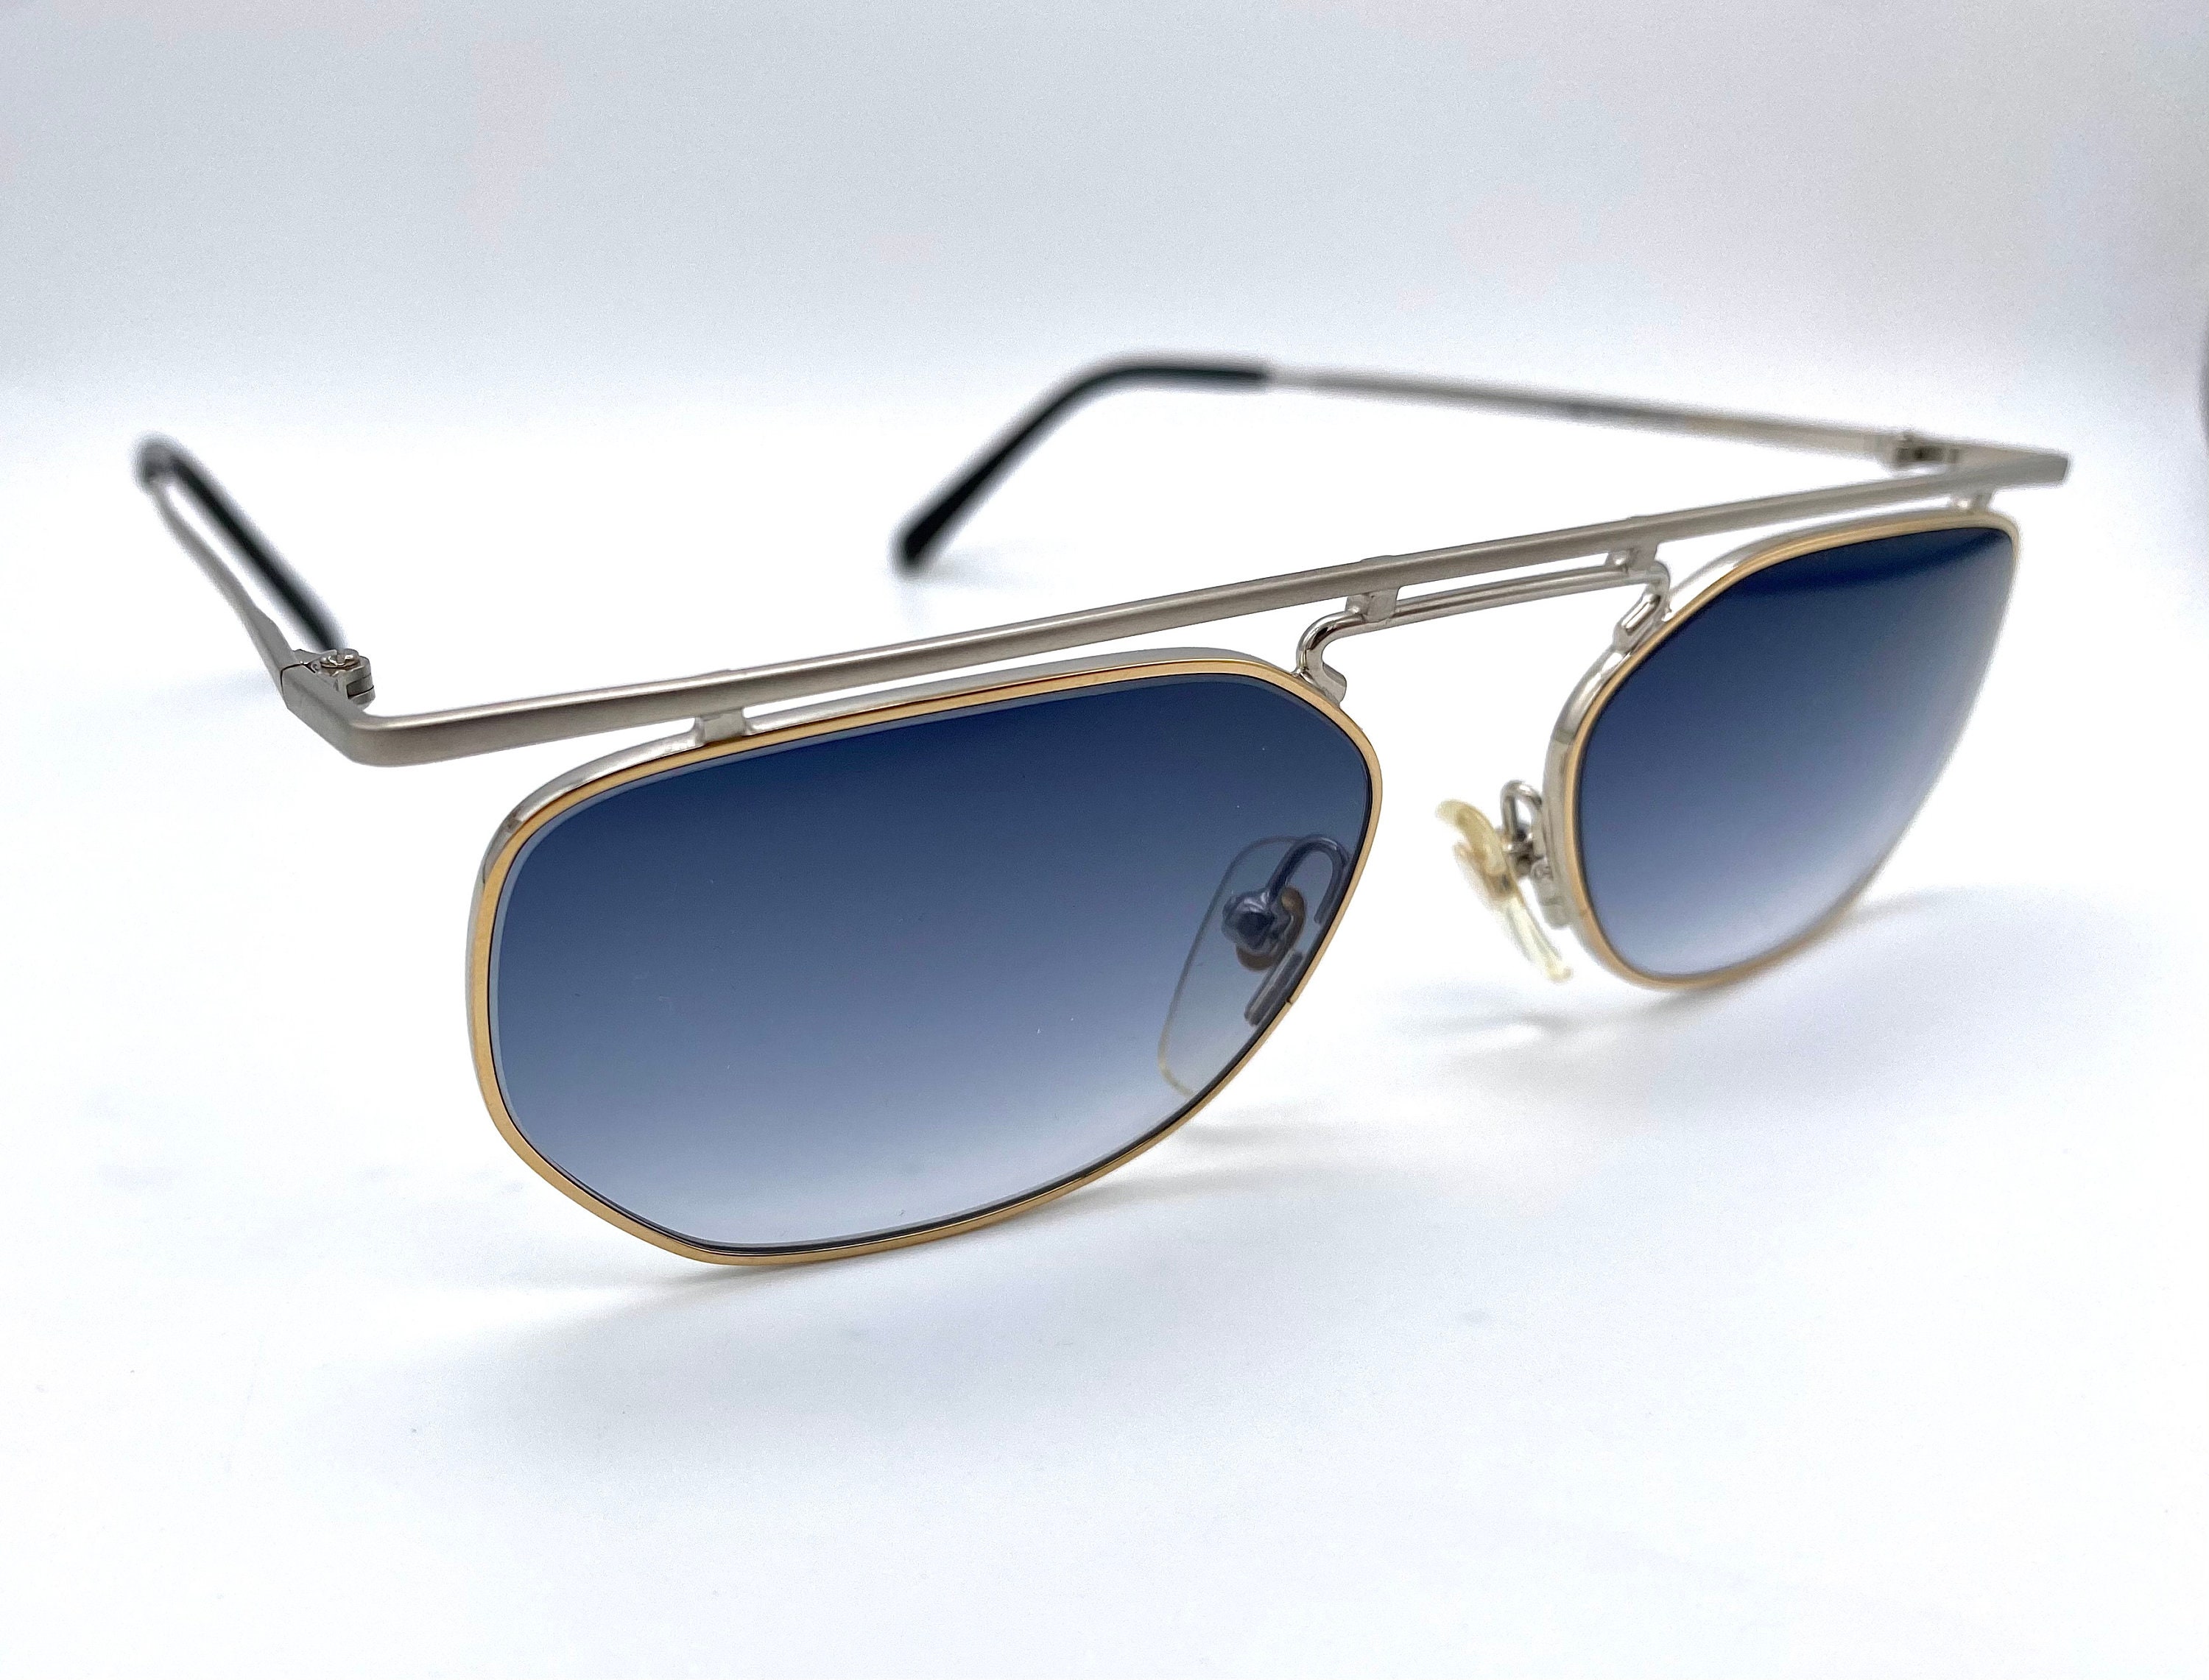 Accessoires Zonnebrillen & Eyewear Zonnebrillen ESSENCE mod DIACO 658 vintage steampunk zonnebrillen gemaakt in Japan 90'S NOS 